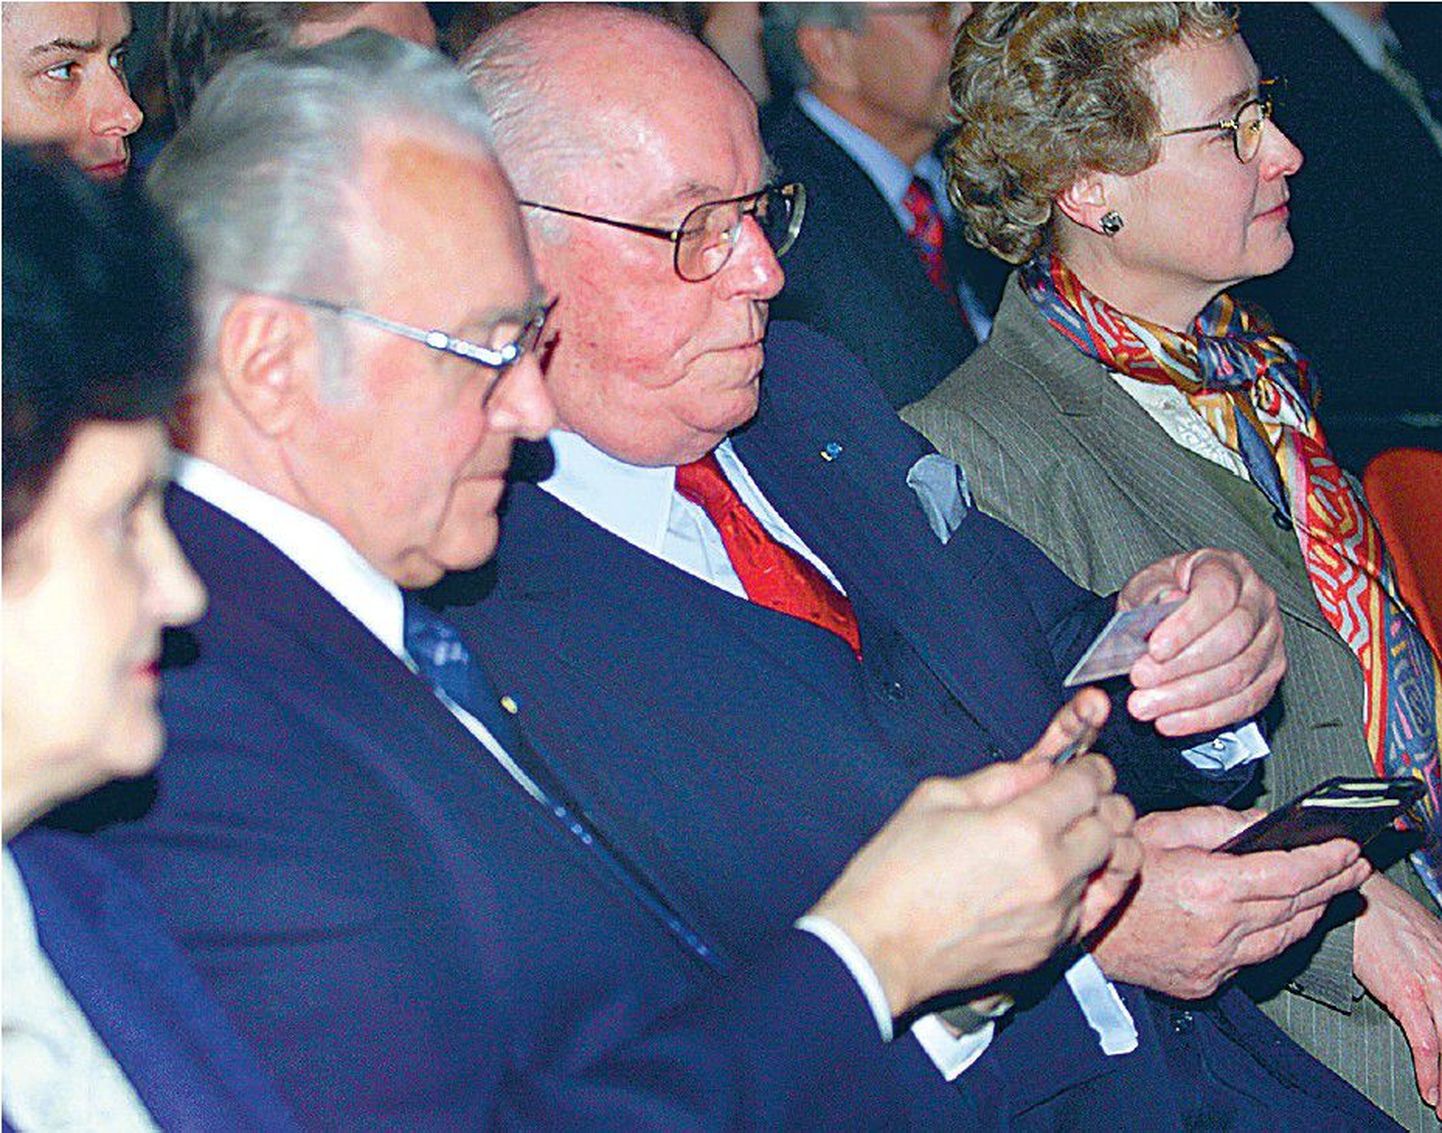 See foto on tehtud 28. jaanuaril 2002, mil presidendid Lennart Meri ja Arnold Rüütel said esimestena kätte ID-kaardid. Pidulikul sündmusel osalesid ka nende abikaasad Helle Meri ja Ingrid Rüütel.